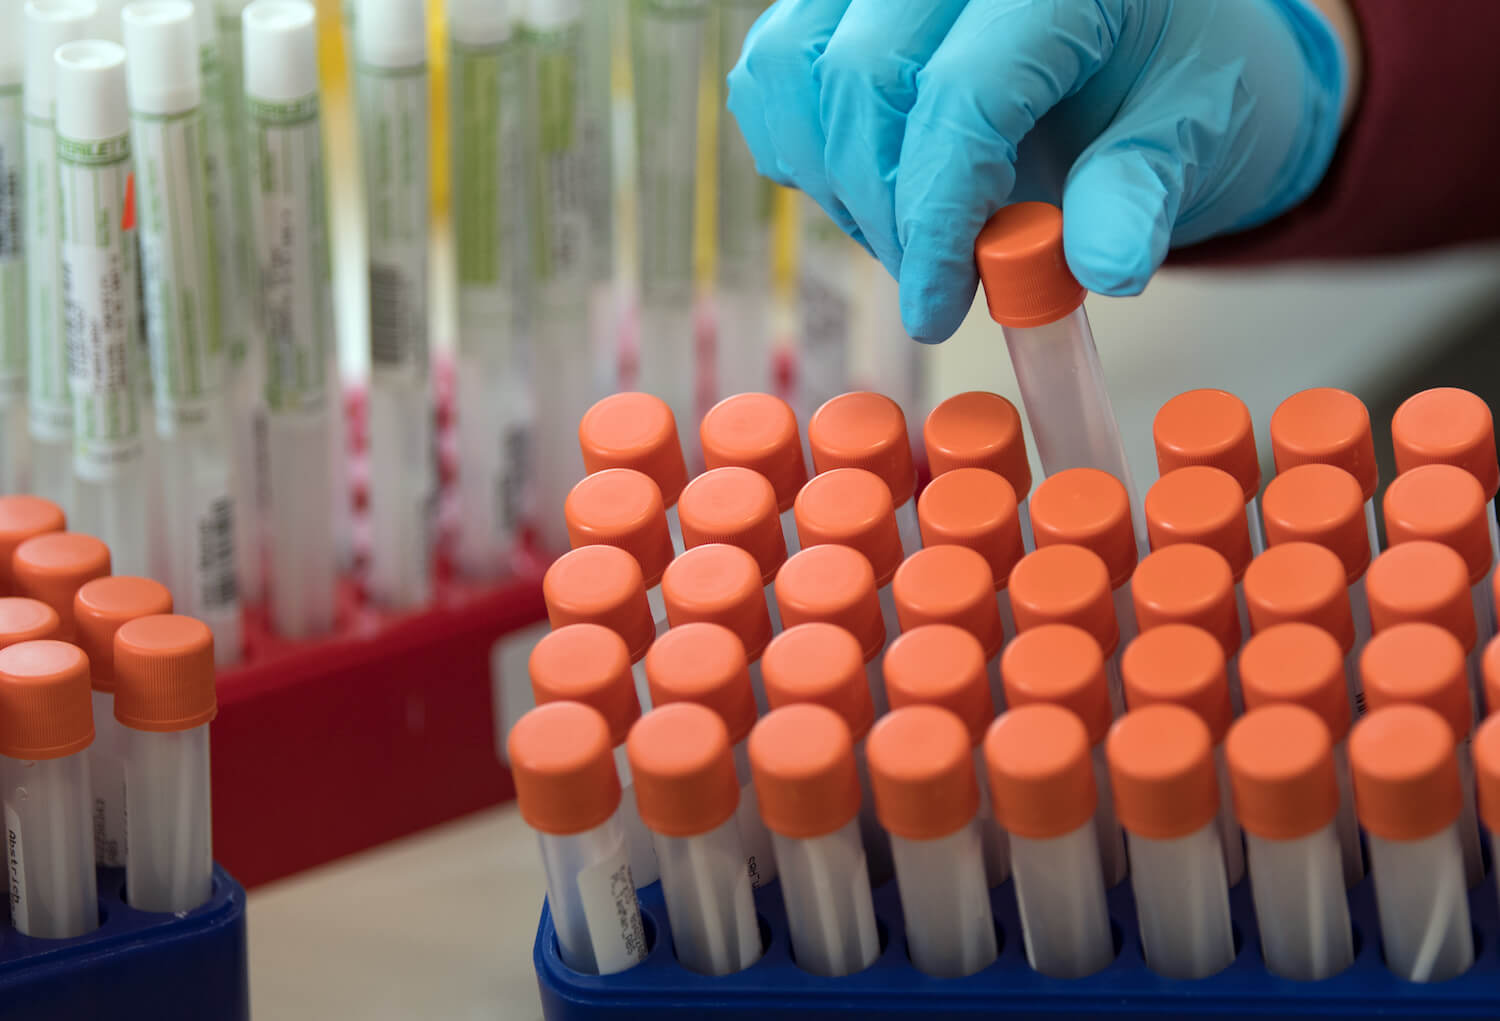 Immer wieder wird behauptet, die PCR-Tests auf SARS-CoV-2 wären nicht zuverlässig. Jetzt sollen sie angeblich verantwortlich sein für die Corona-Ausbrüche in Schlachthöfen.